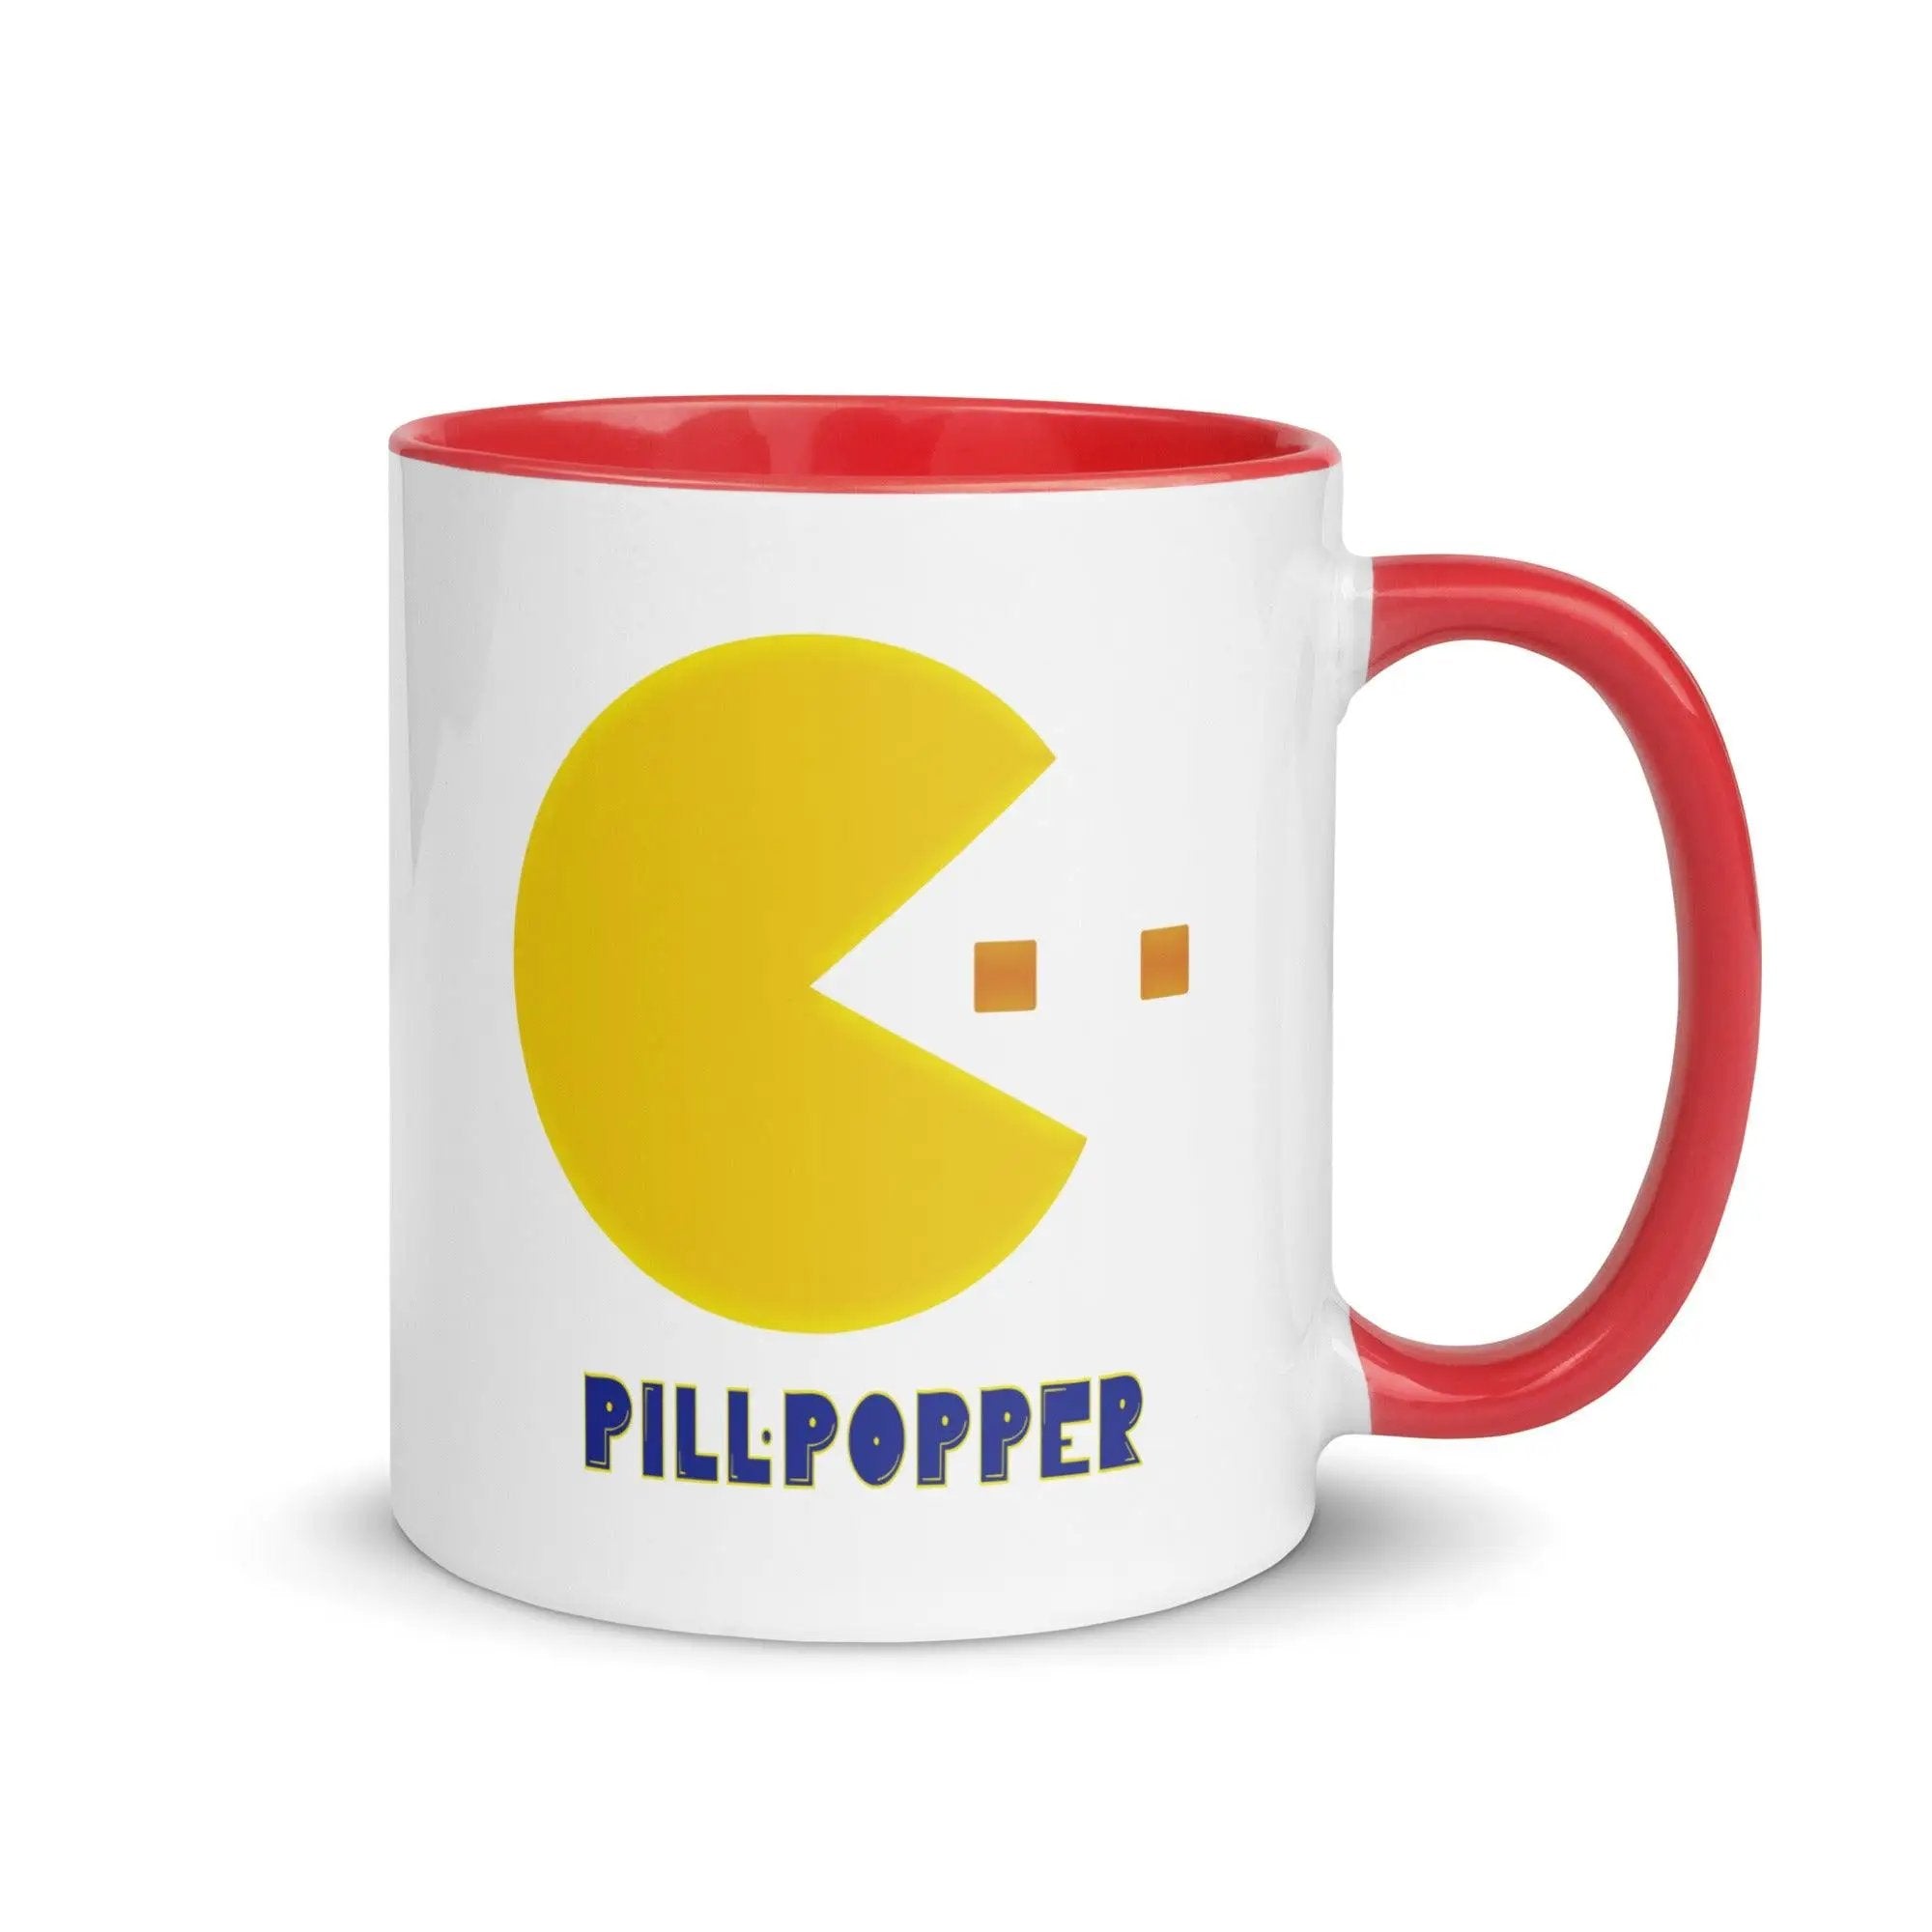 Pill-Popper Mug with Color Inside